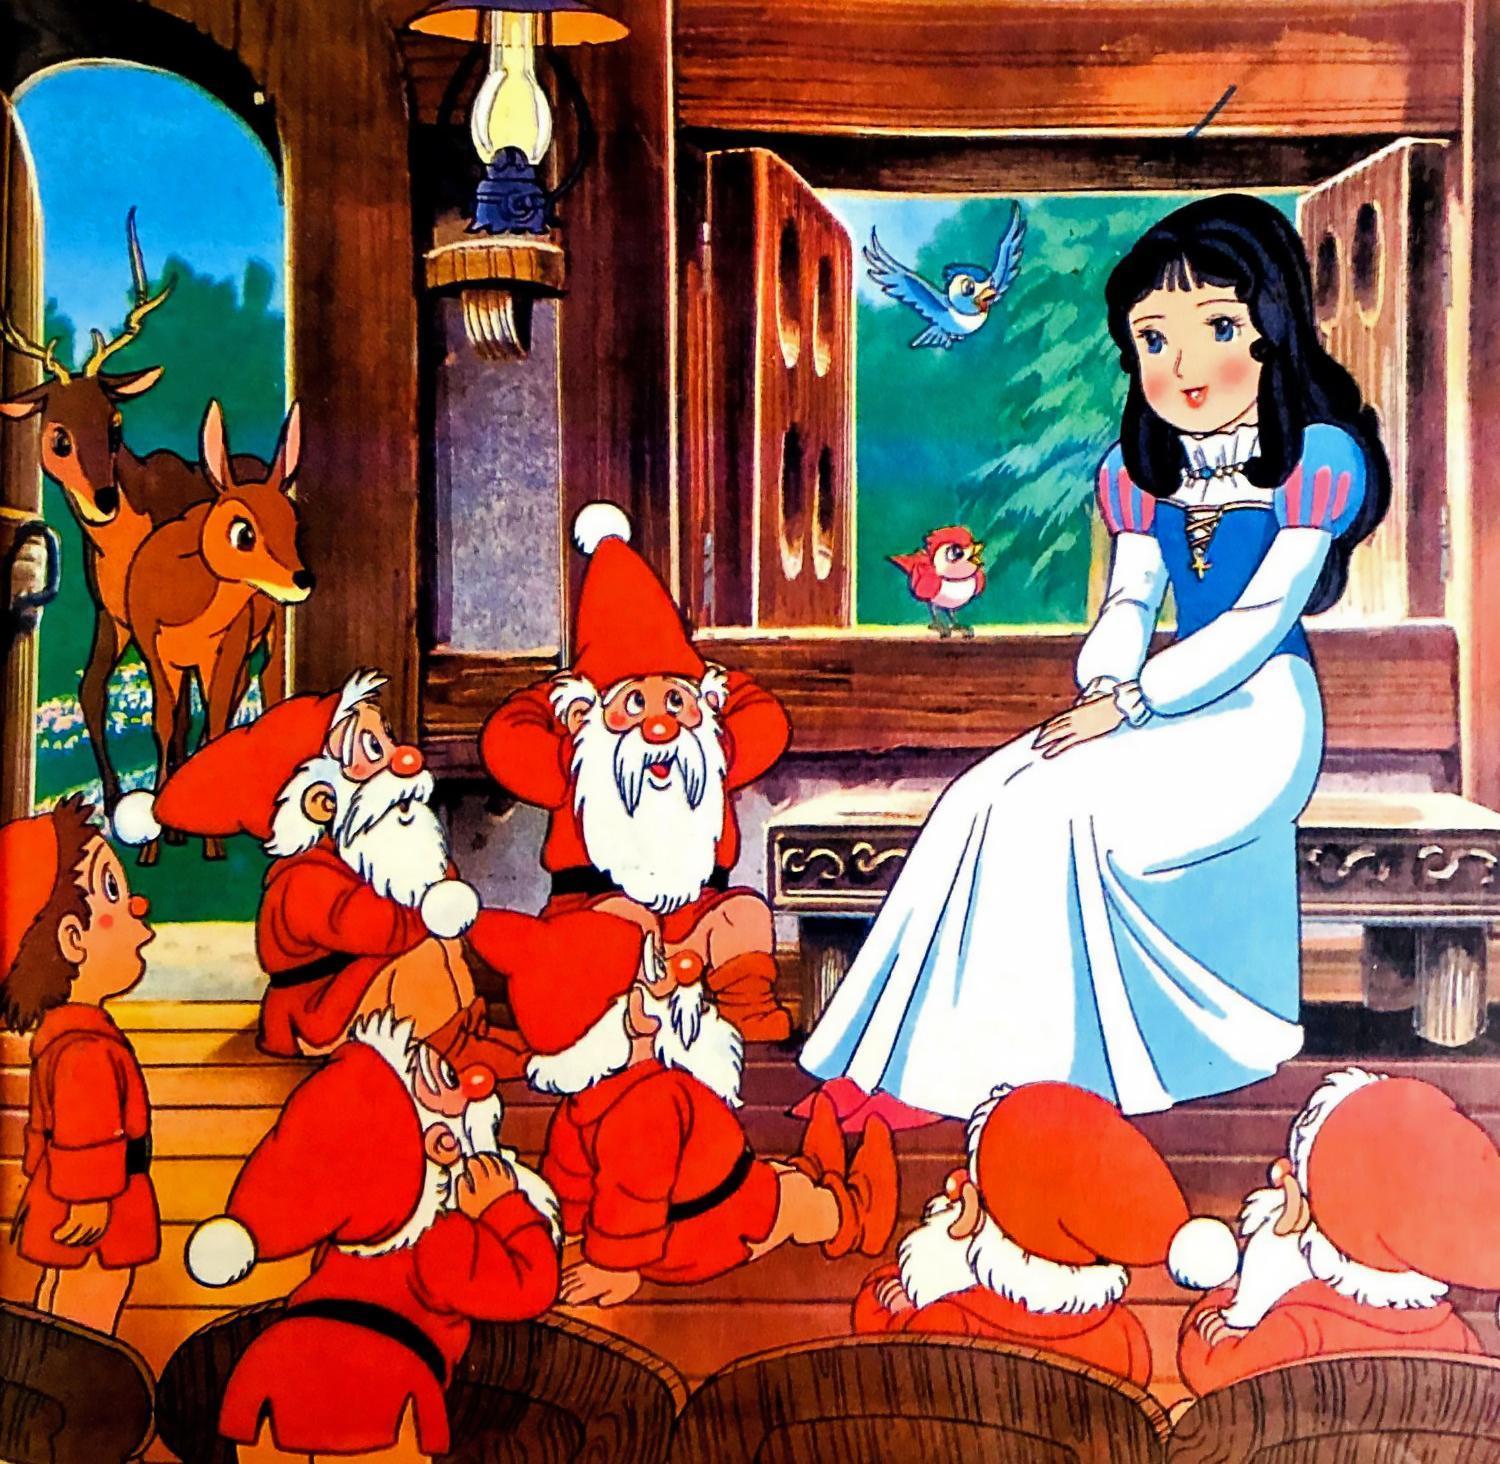 【童话名著·绘本】德国·格林童话《白雪公主》